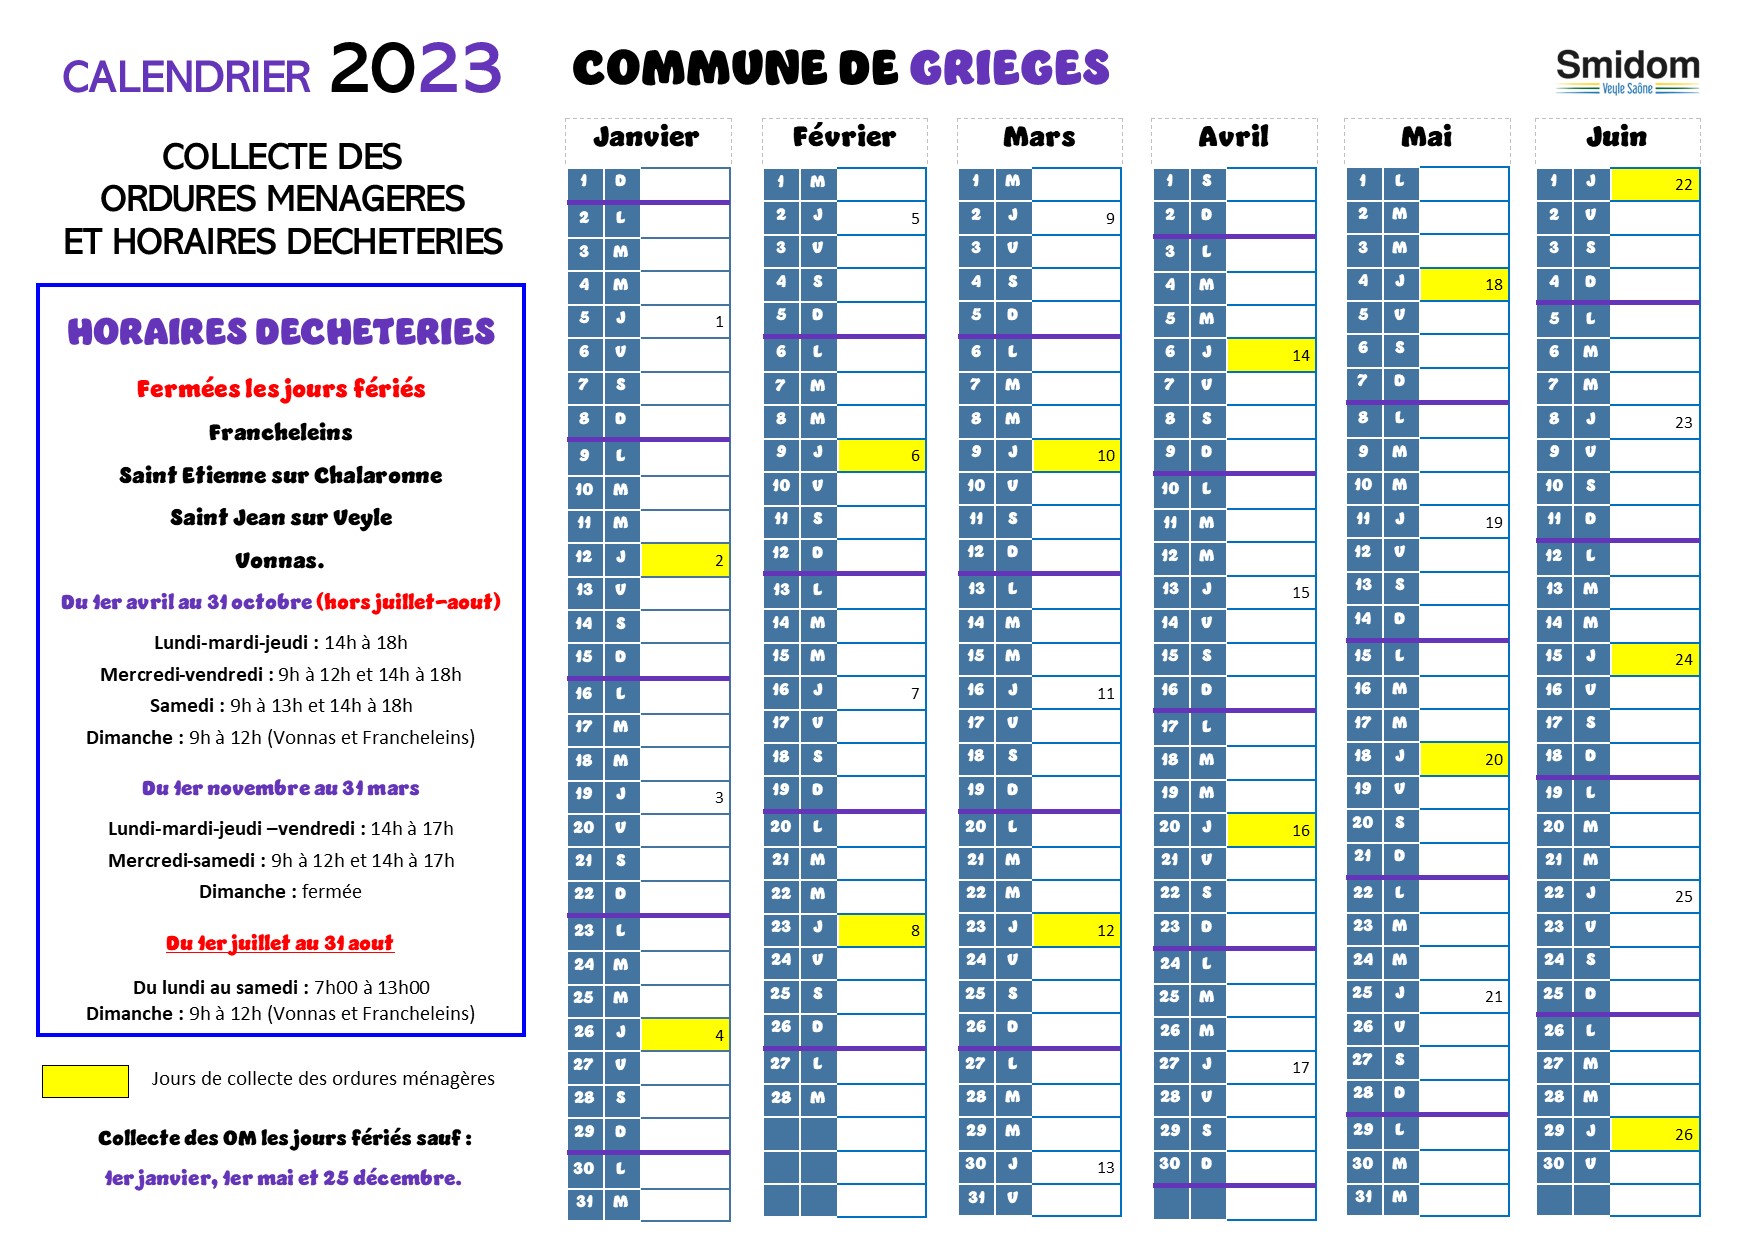 Grièges Calendrier 2023.jpg